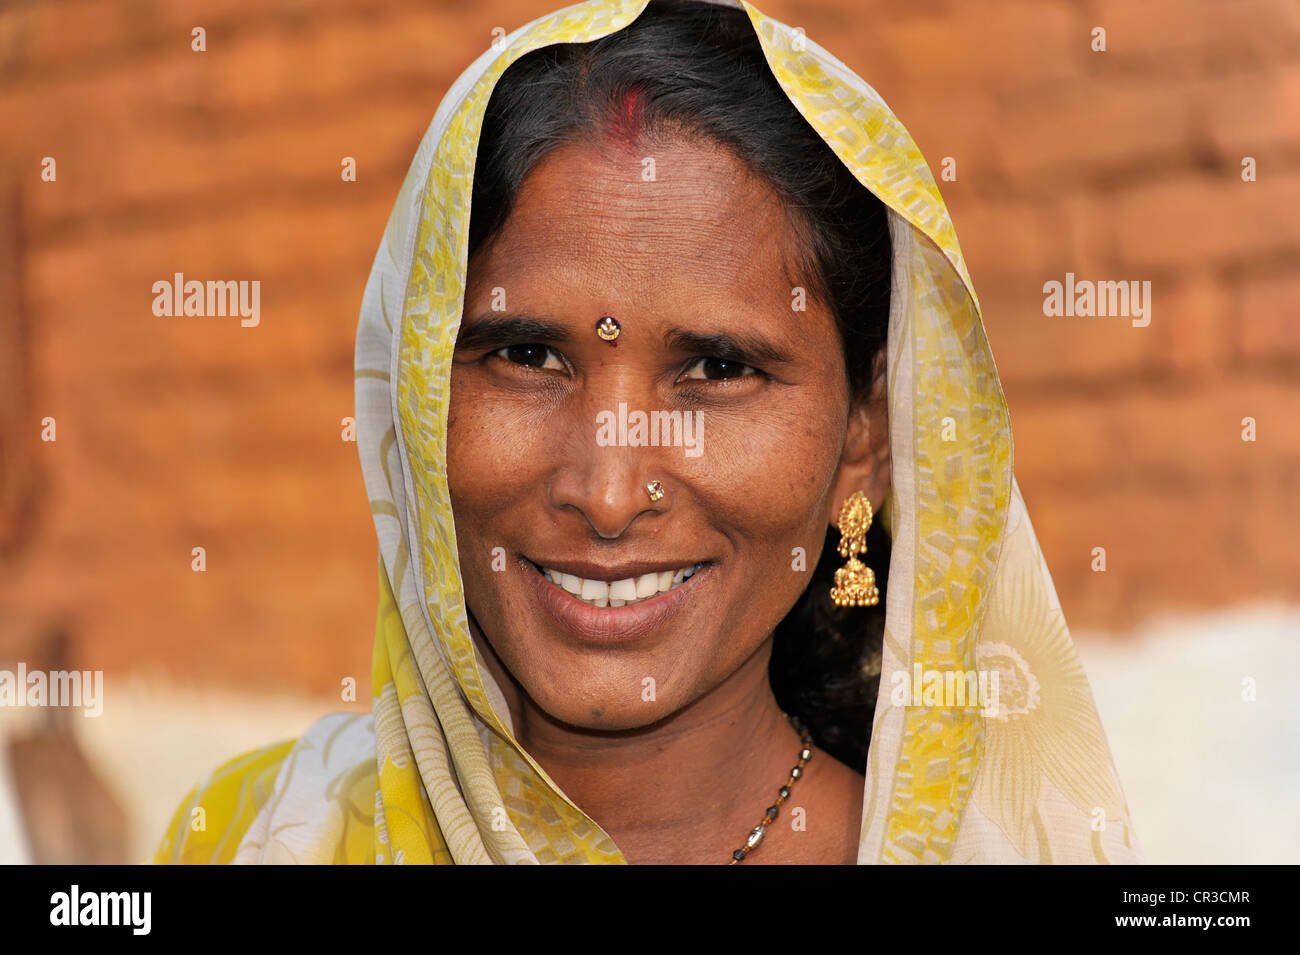 Femme indienne, portrait, Khajuraho, Madhya Pradesh, Inde, Asie Banque D'Images